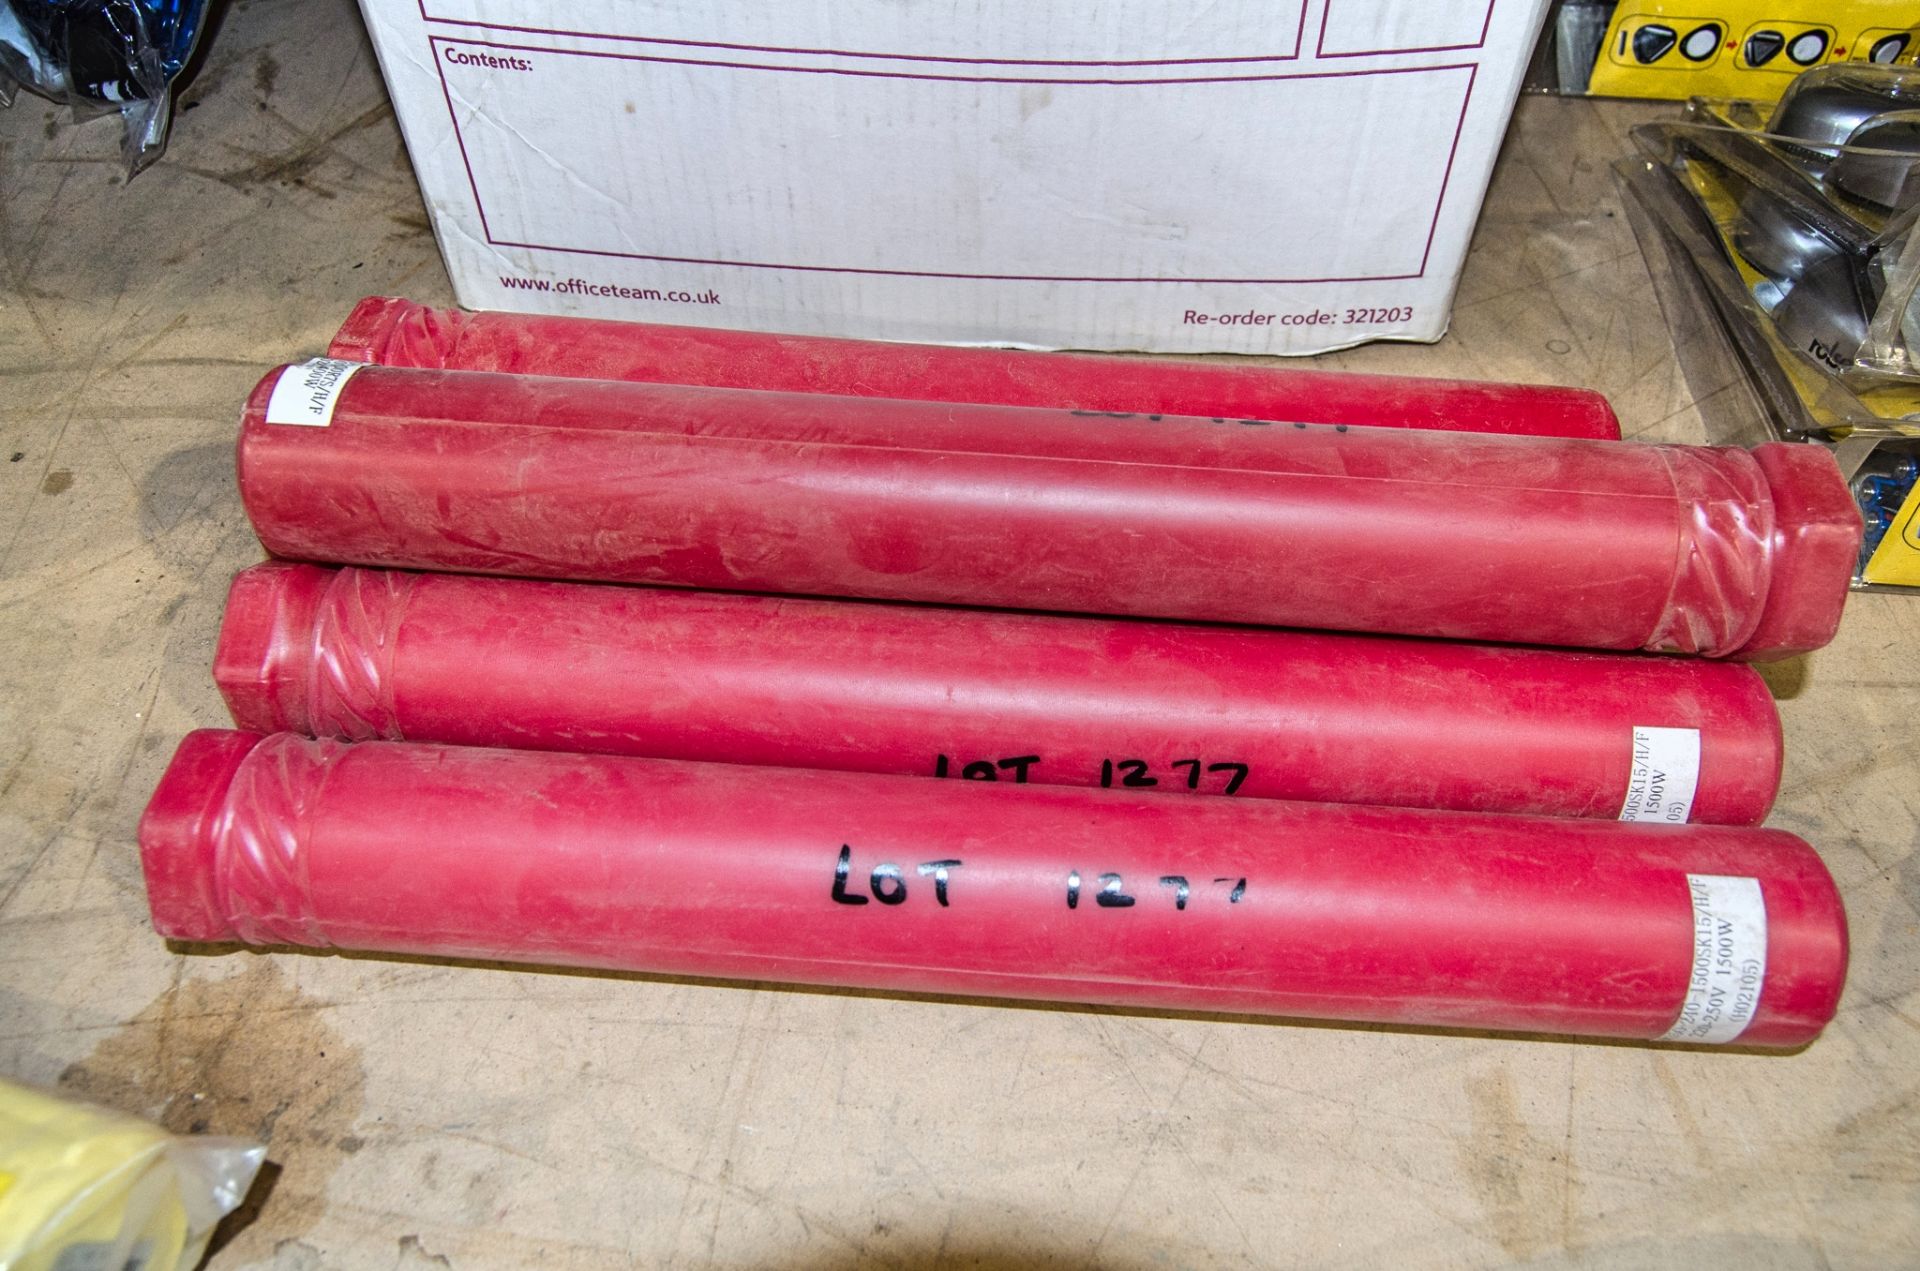 5 - 240v infrared heater tubes